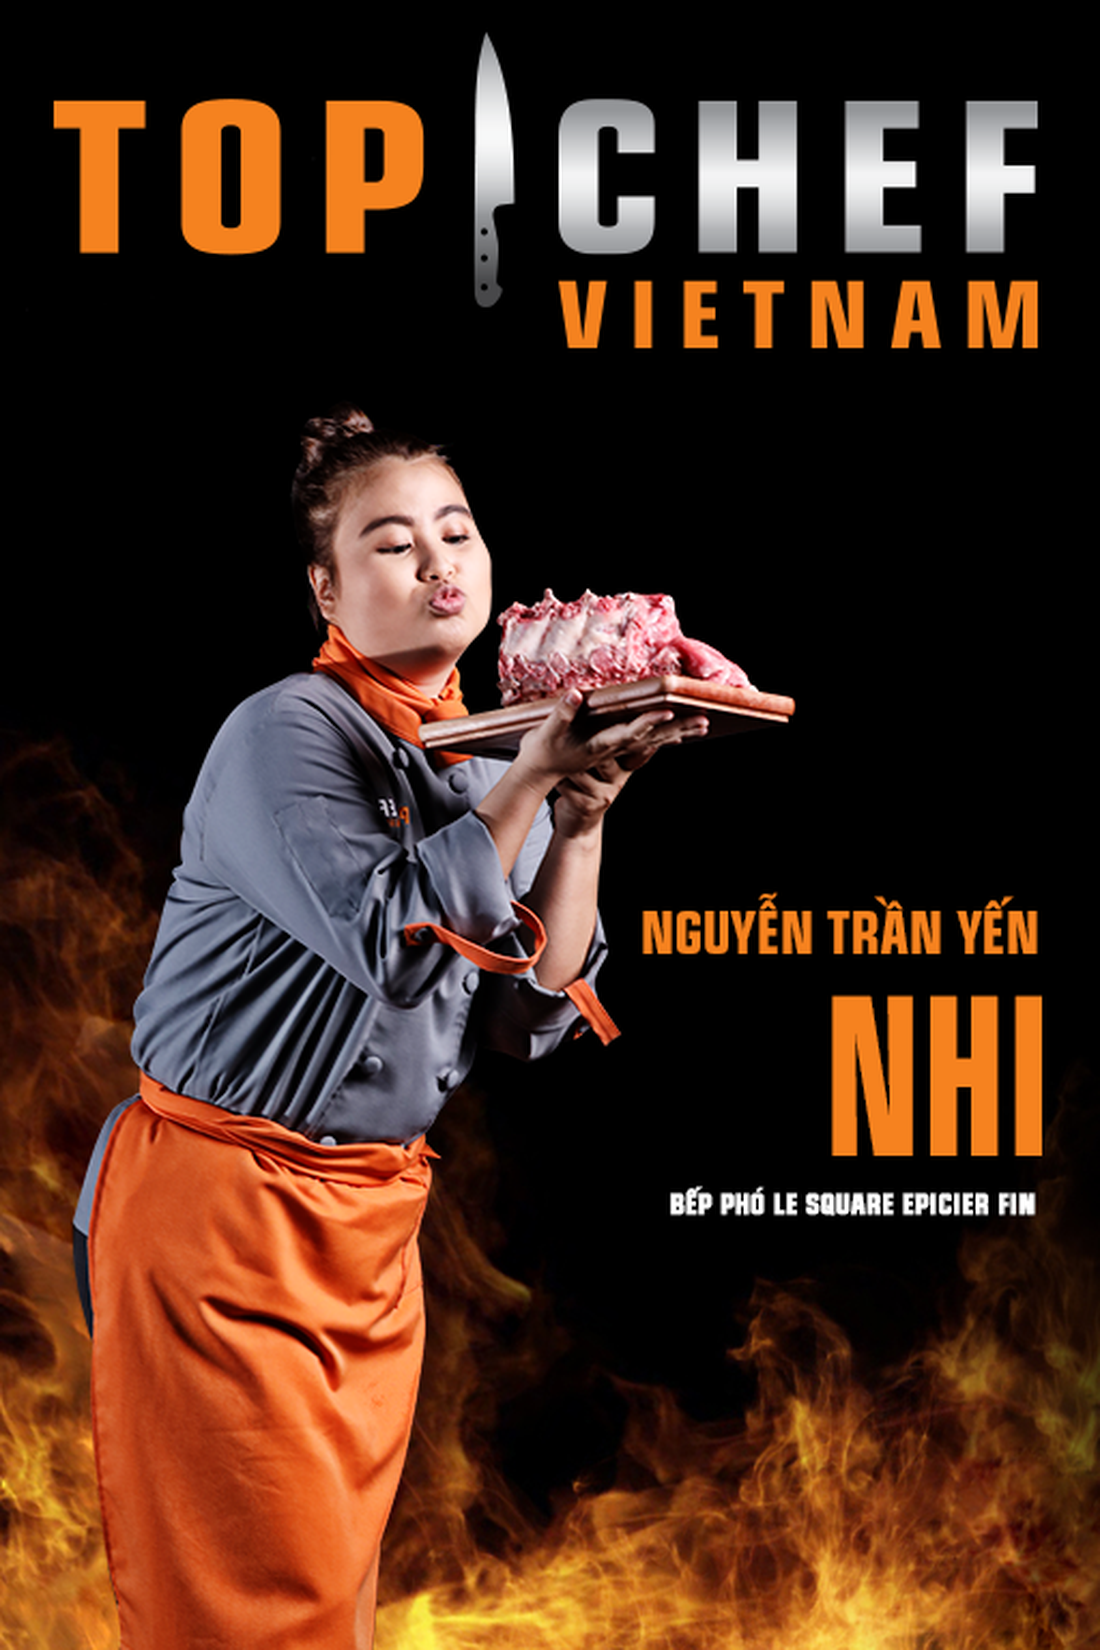 Lộ diện top 14 Đầu bếp thượng đỉnh - Top chef Vietnam 2019 - Ảnh 12.